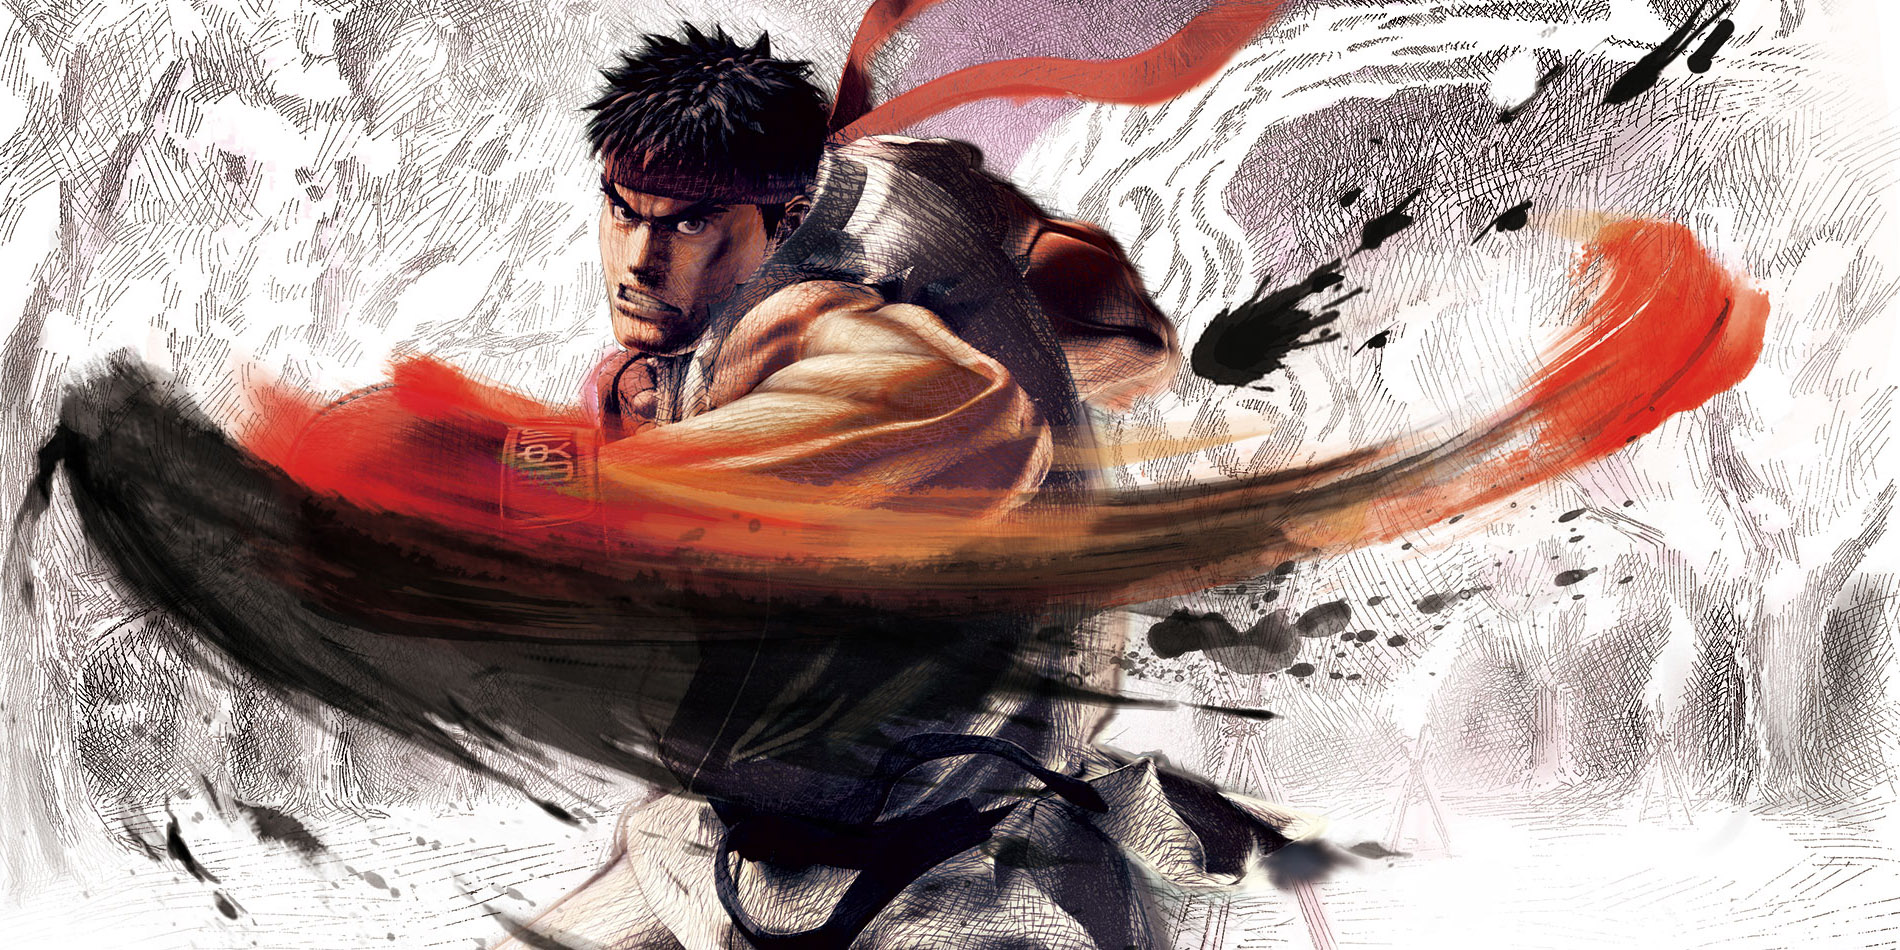 ryu street fighter wallpaper,kung fu,illustrazione,personaggio fittizio,cg artwork,disegno grafico